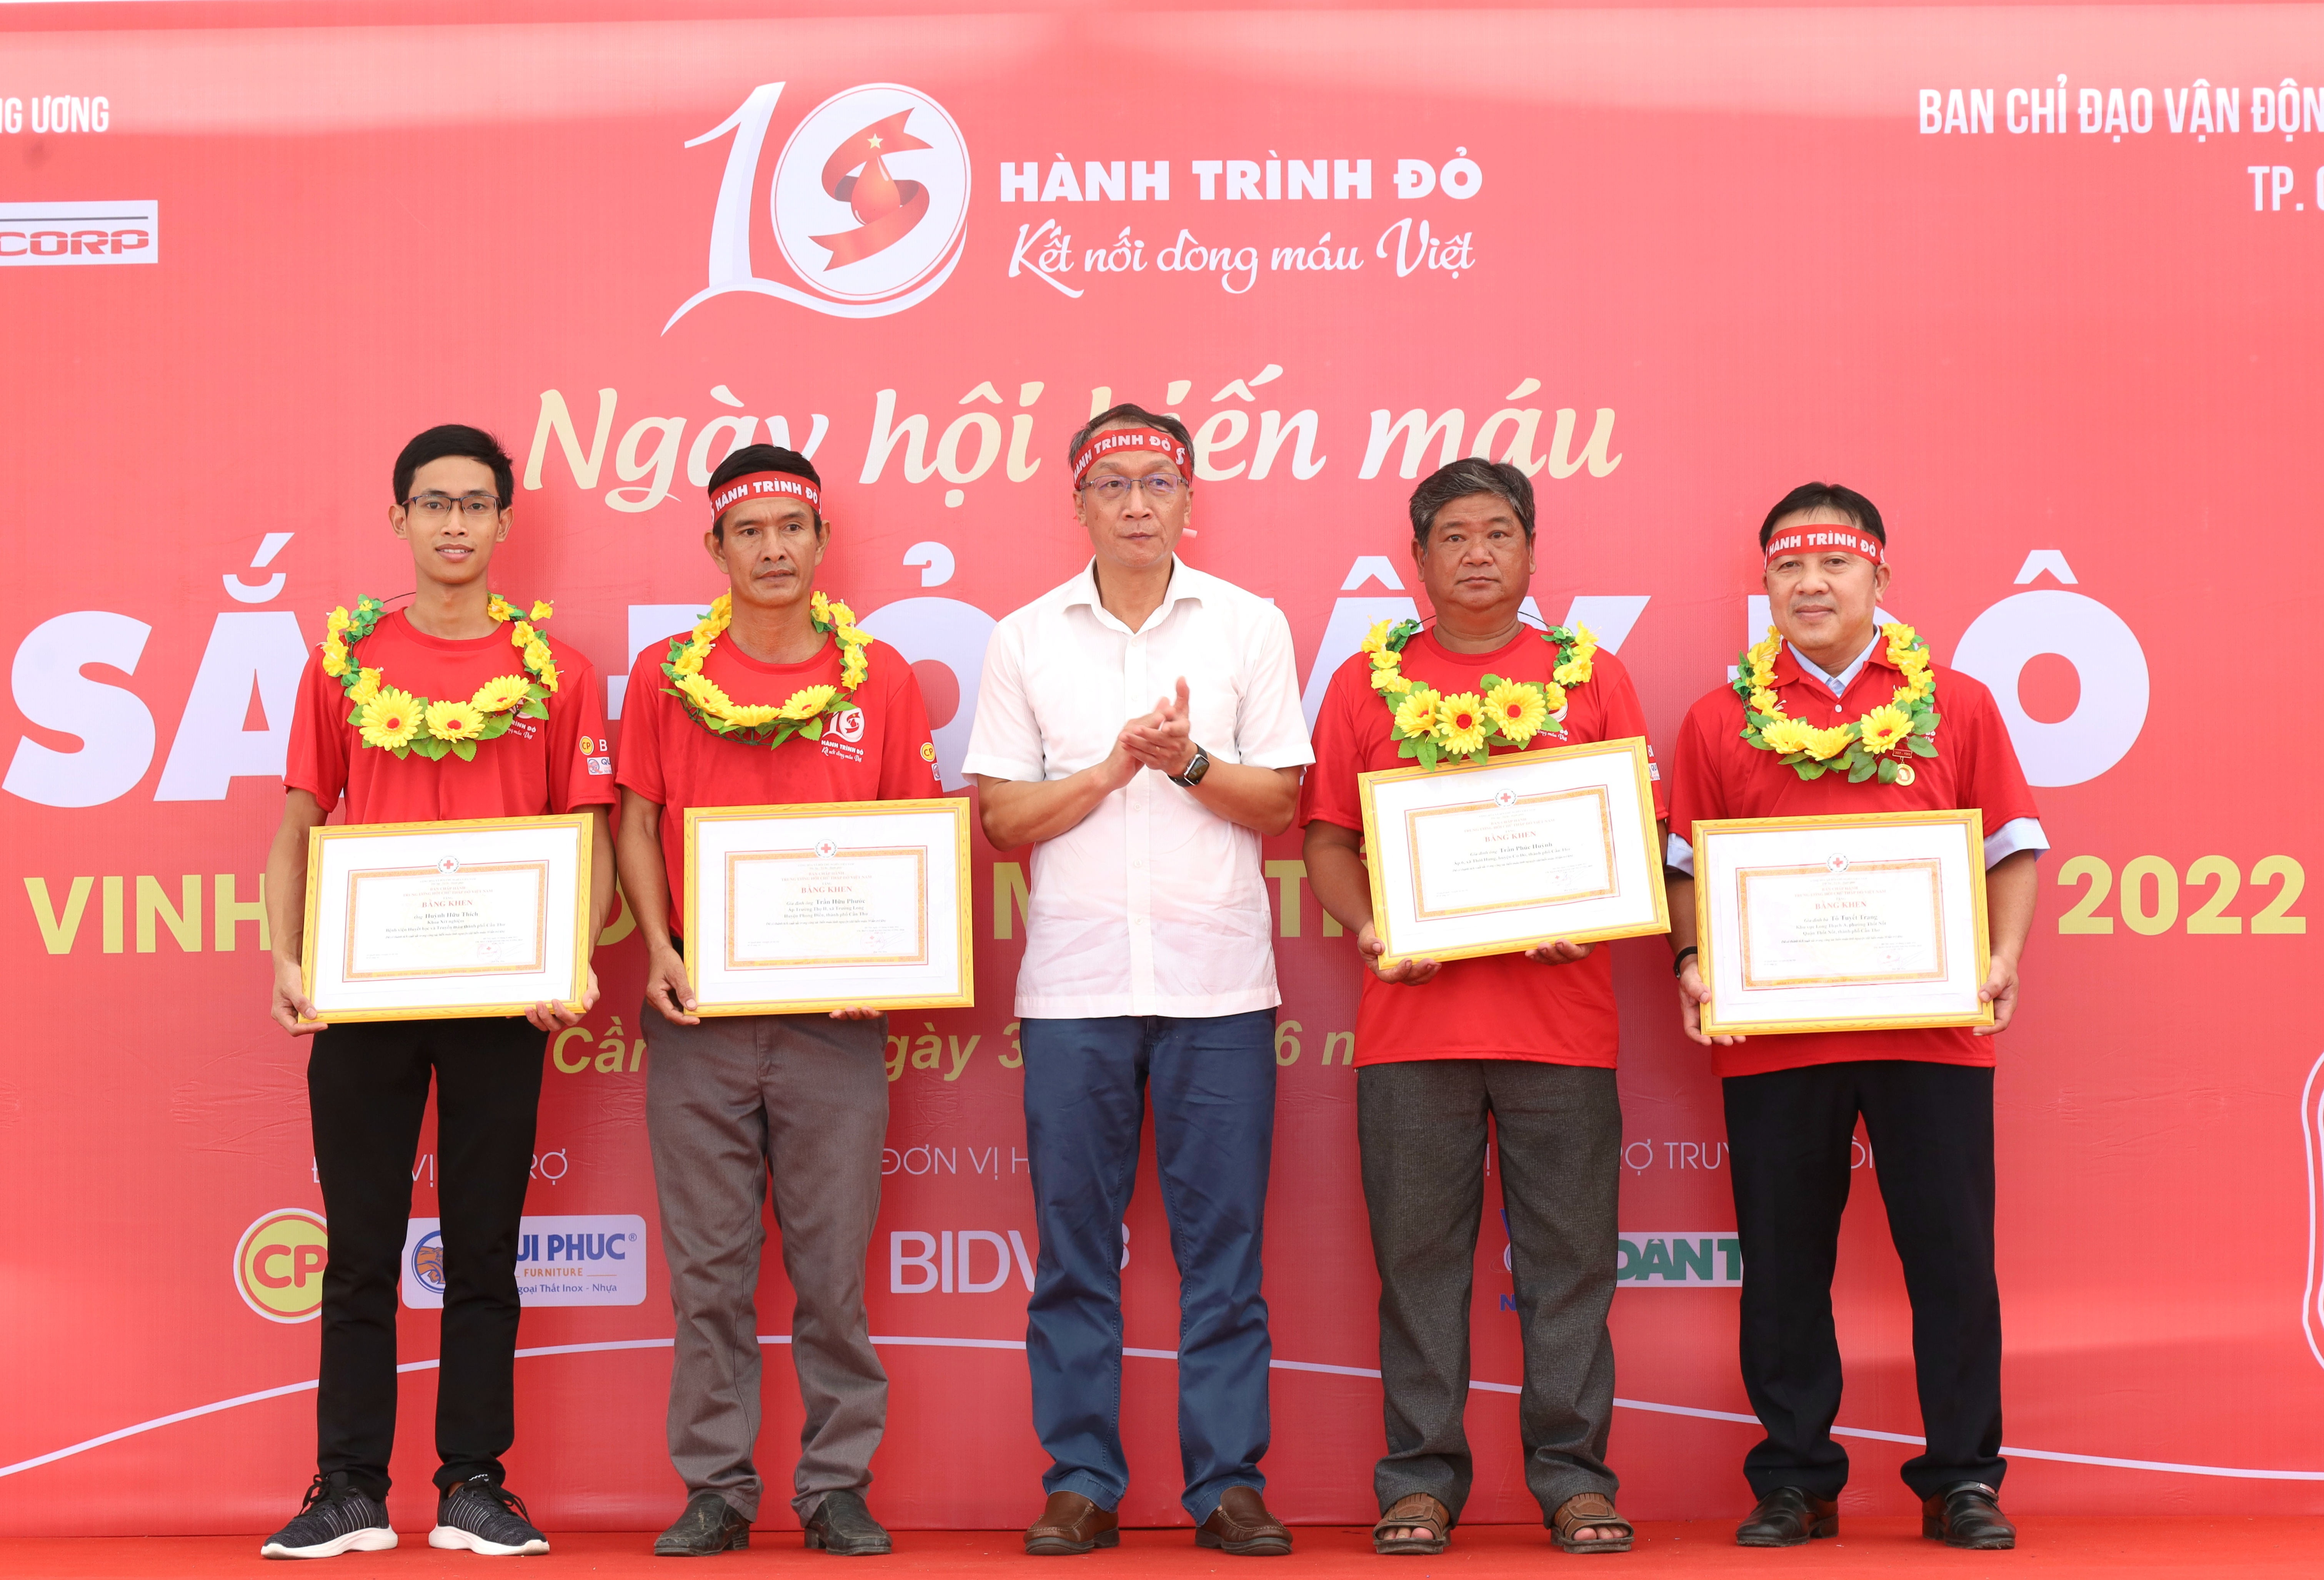 Tiến sĩ Bạch Quốc Khánh - Viện trưởng Viện truyền máu - Huyết học Trung ương trao bằng khen của BCH TW Hội Chữ thập đỏ Việt Nam cho các gia đình, cá nhân có thành tích xuất sắc trong công tác hiến máu tình nguyện.